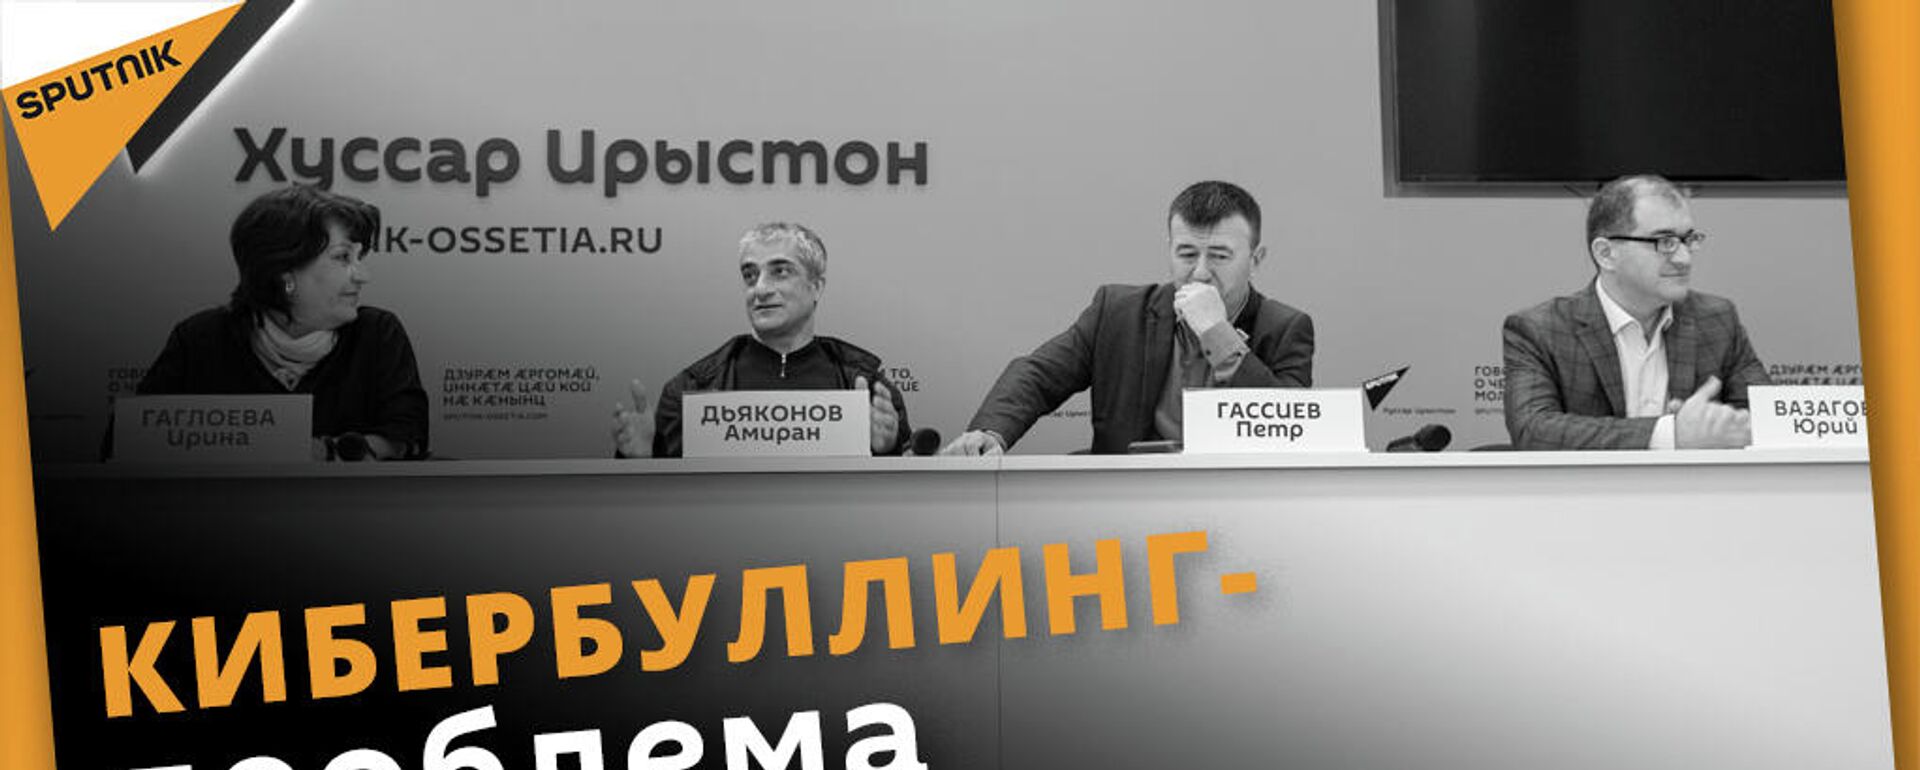 СМИ & соцсети: в пресс-центре  Sputnik обсудили роль и влияние социальных платформ - Sputnik Южная Осетия, 1920, 01.11.2021